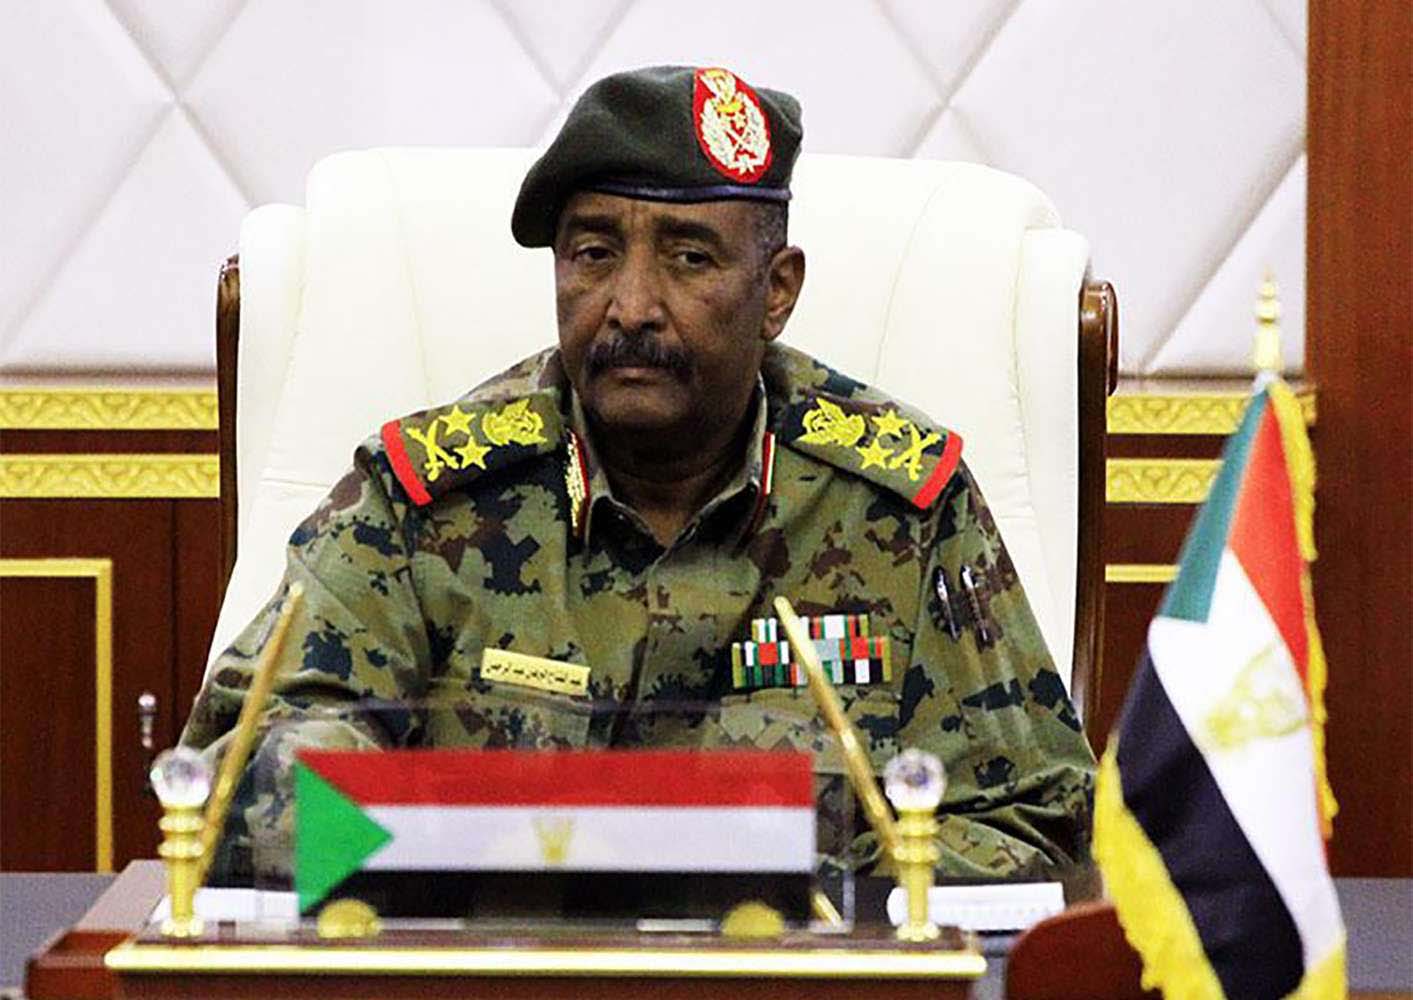 Sudan's army ruler General Abdel Fattah al-Burhan